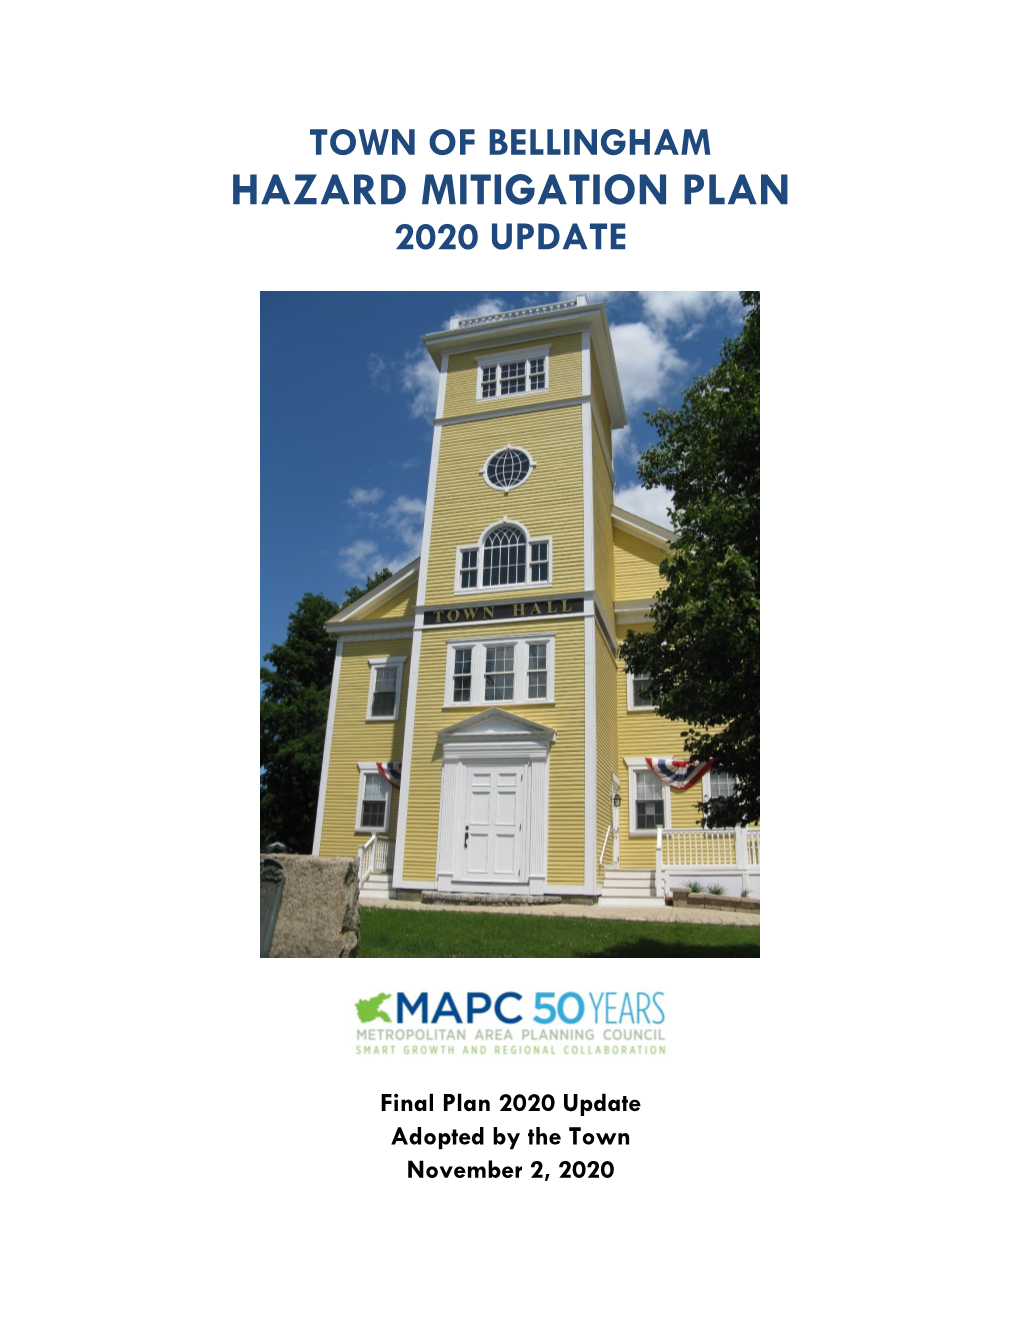 Hazard Mitigation Plan 2020 Update